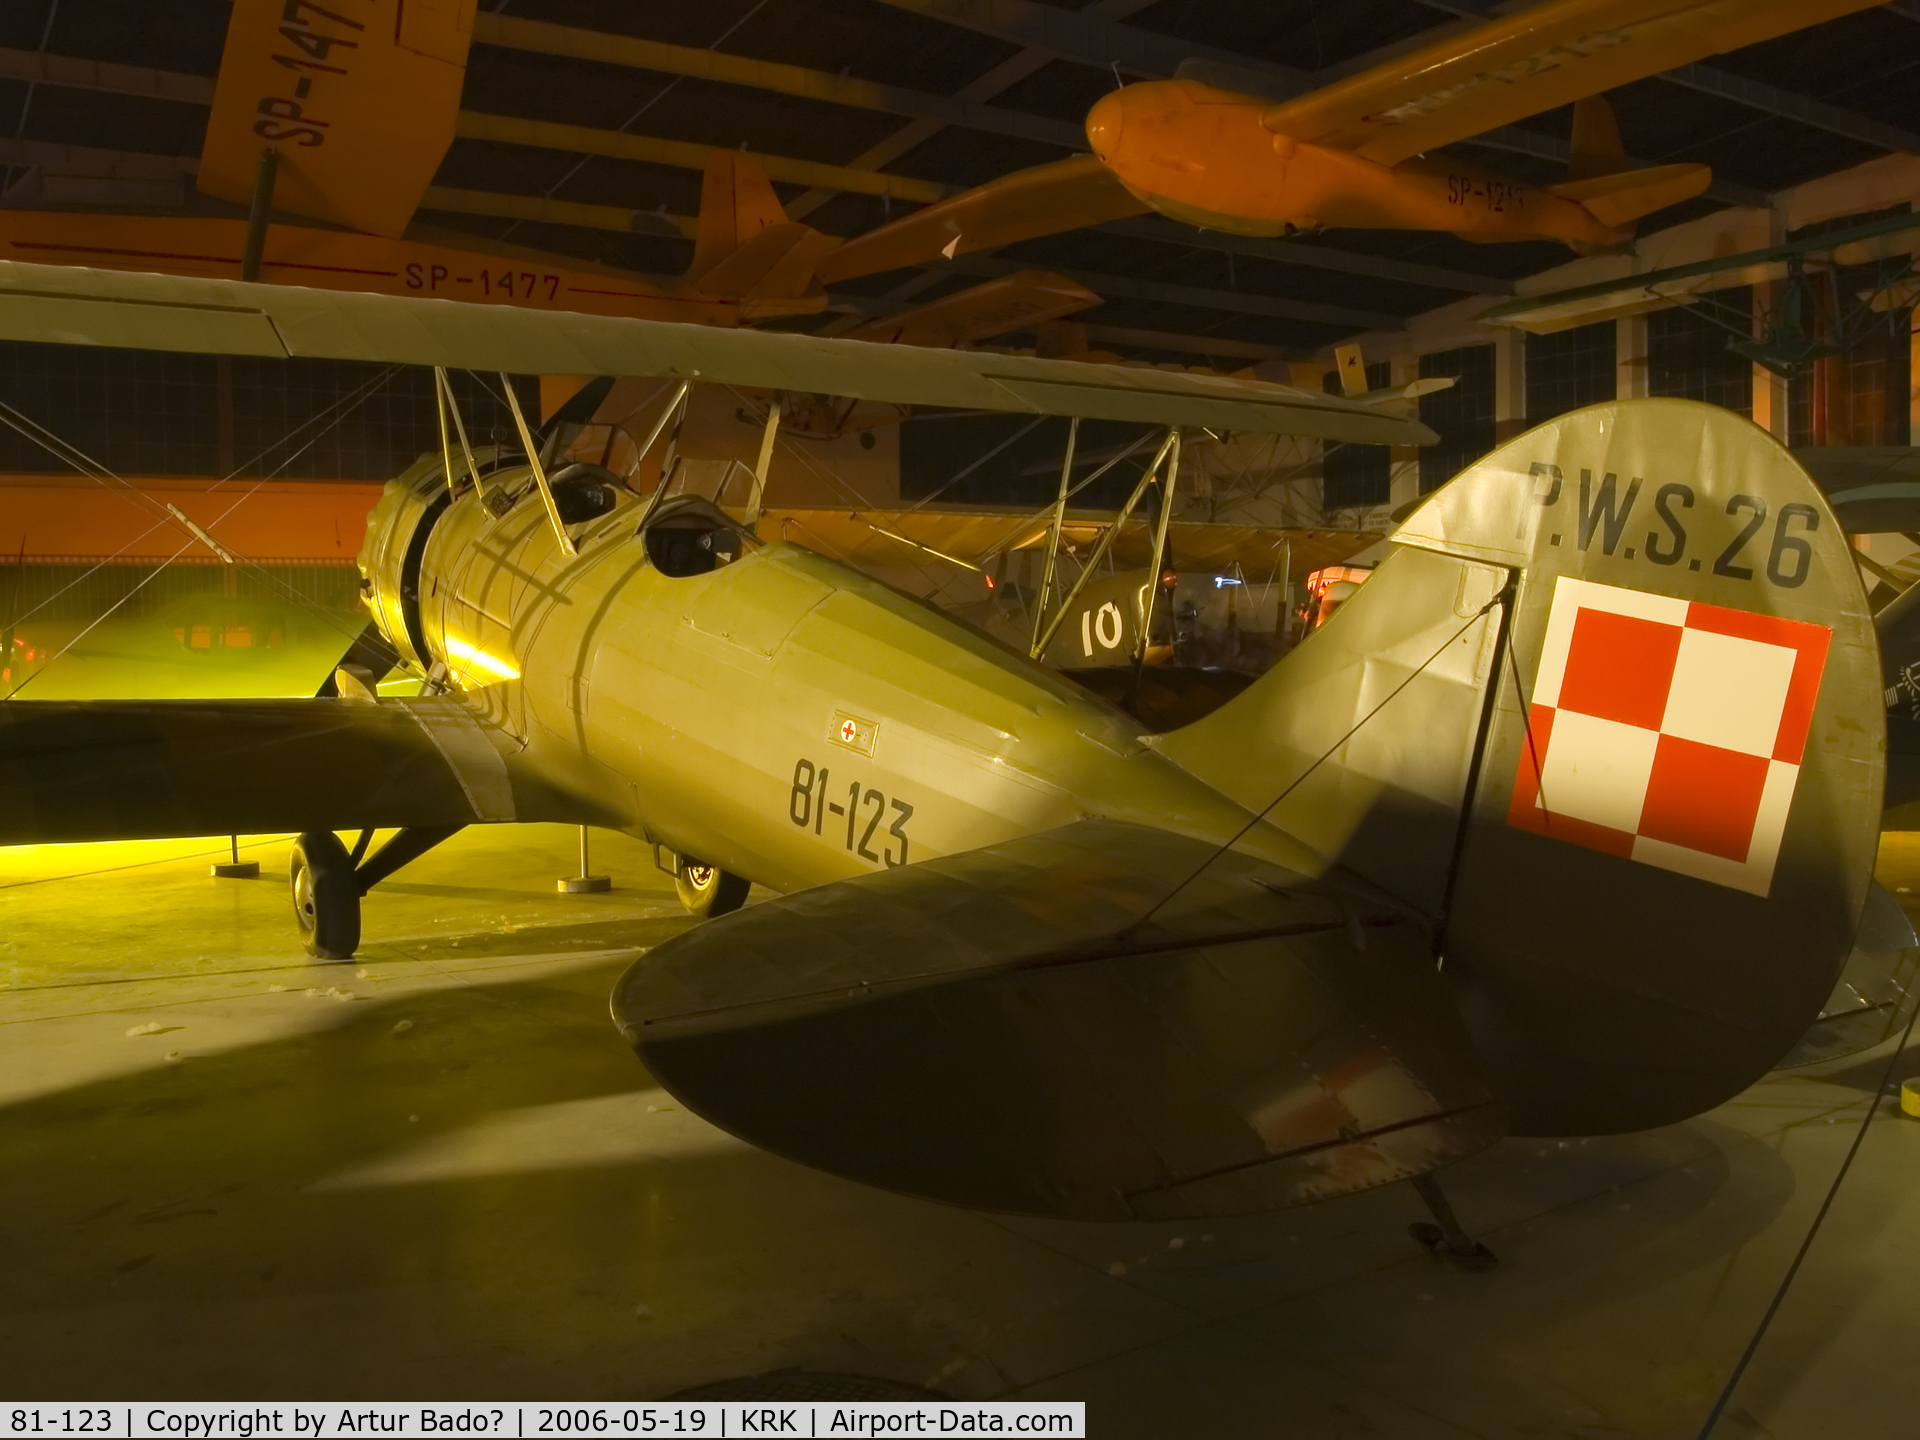 81-123, 1937 Podlanska Wytwomia Samolotow (PWS) PWS 26 C/N 81-123, P.W.S. 26